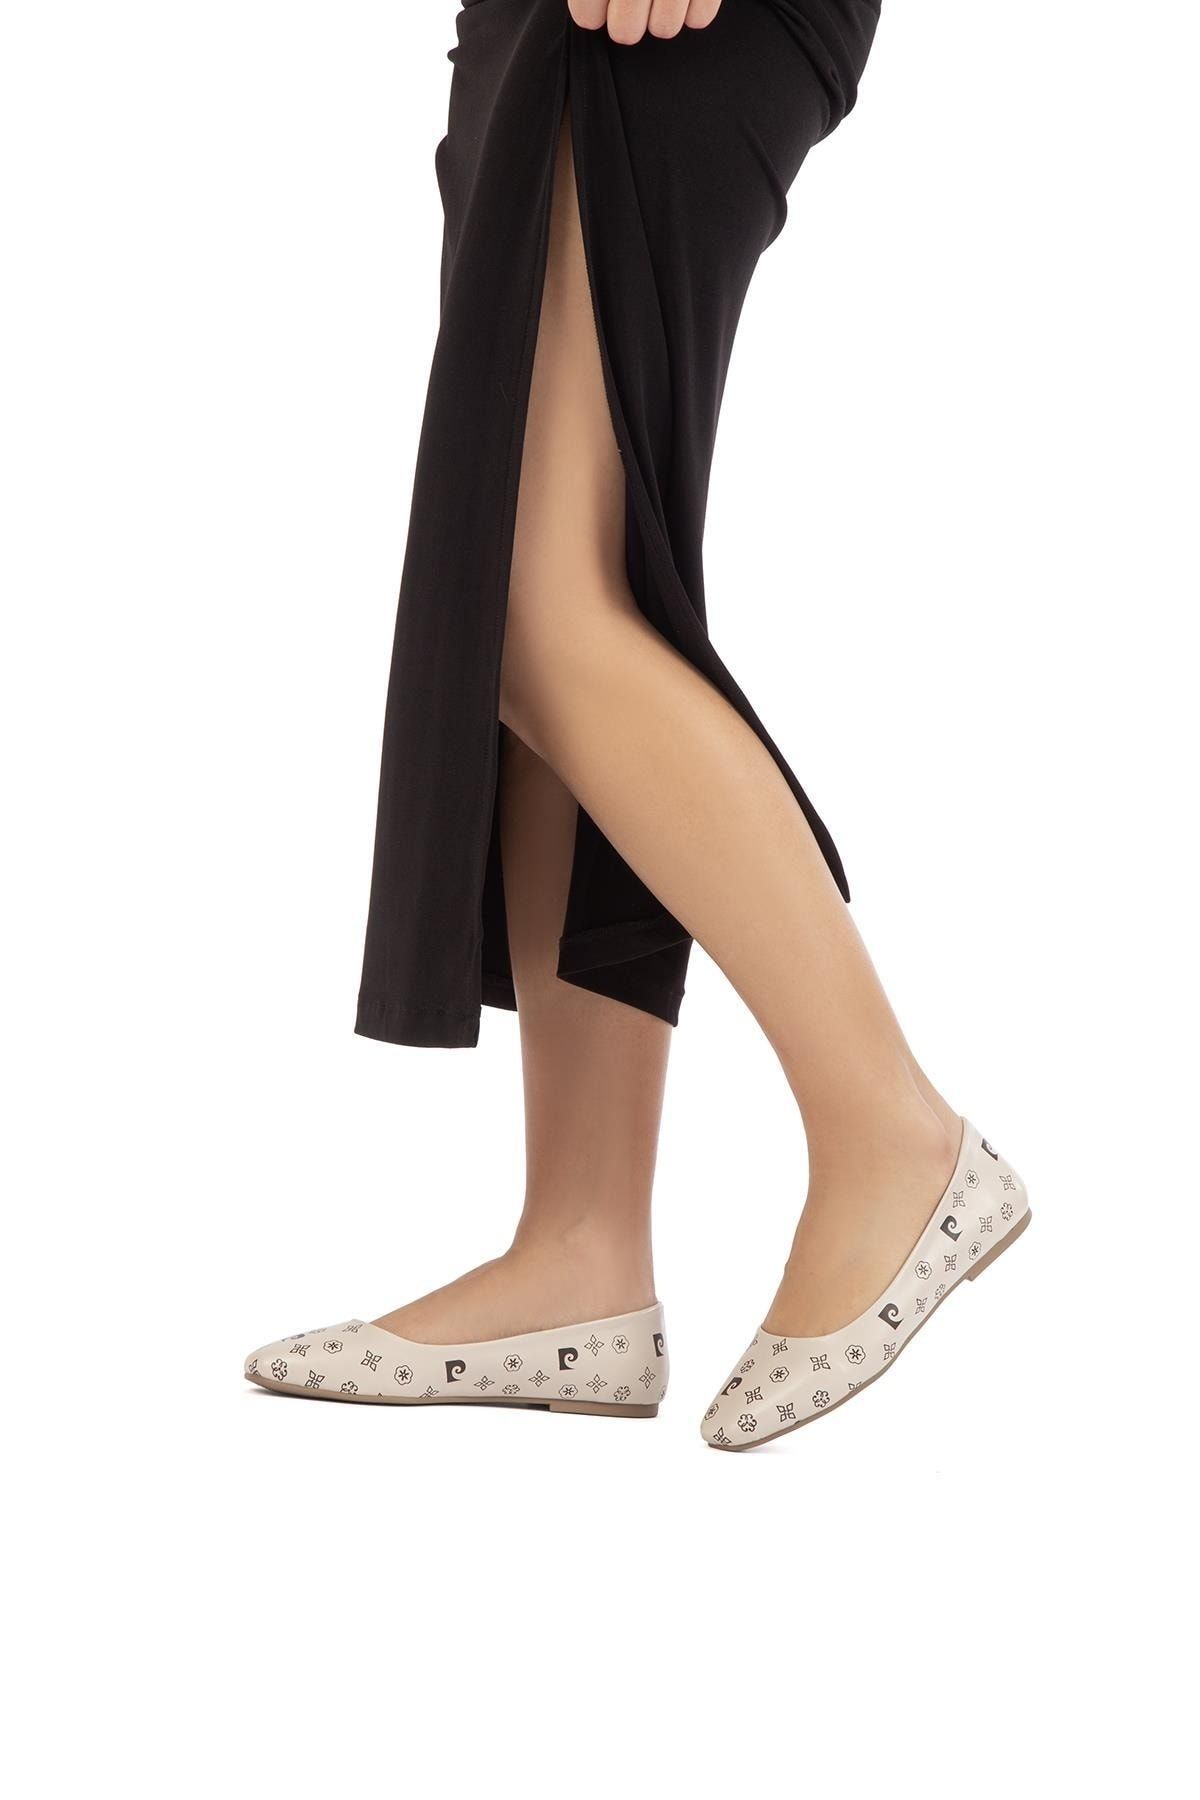 Pierre Cardin ® | Pc-52348-3076 Bej - Kadın Günlük Ayakkabı